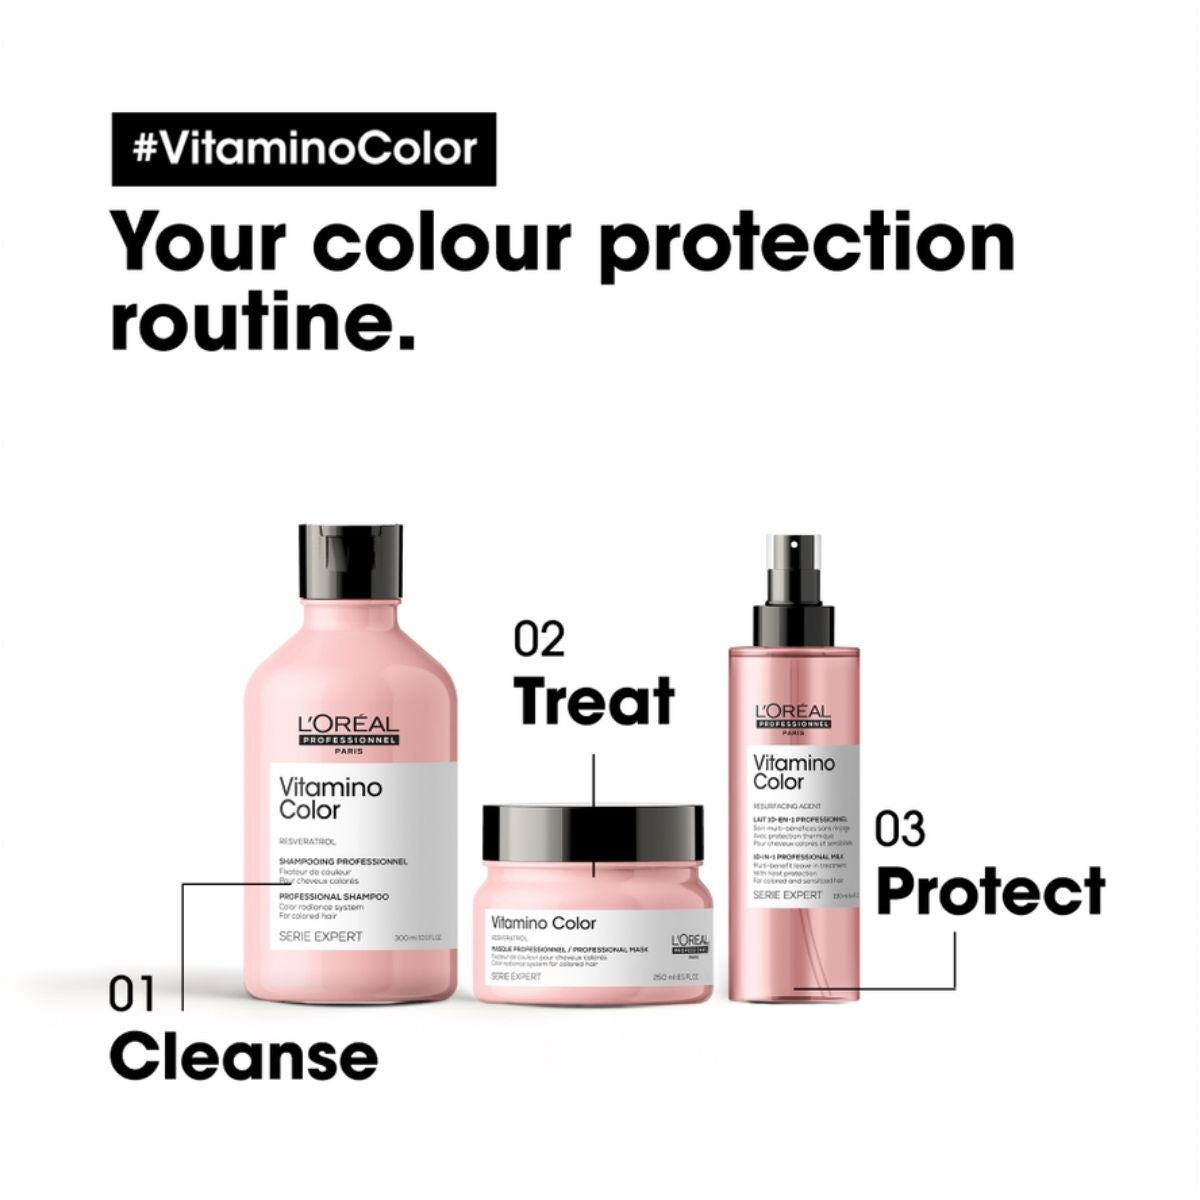 L'Oréal Professionnel Serie Expert Vitamino Color 10 in 1 Multi-Purpose Spray